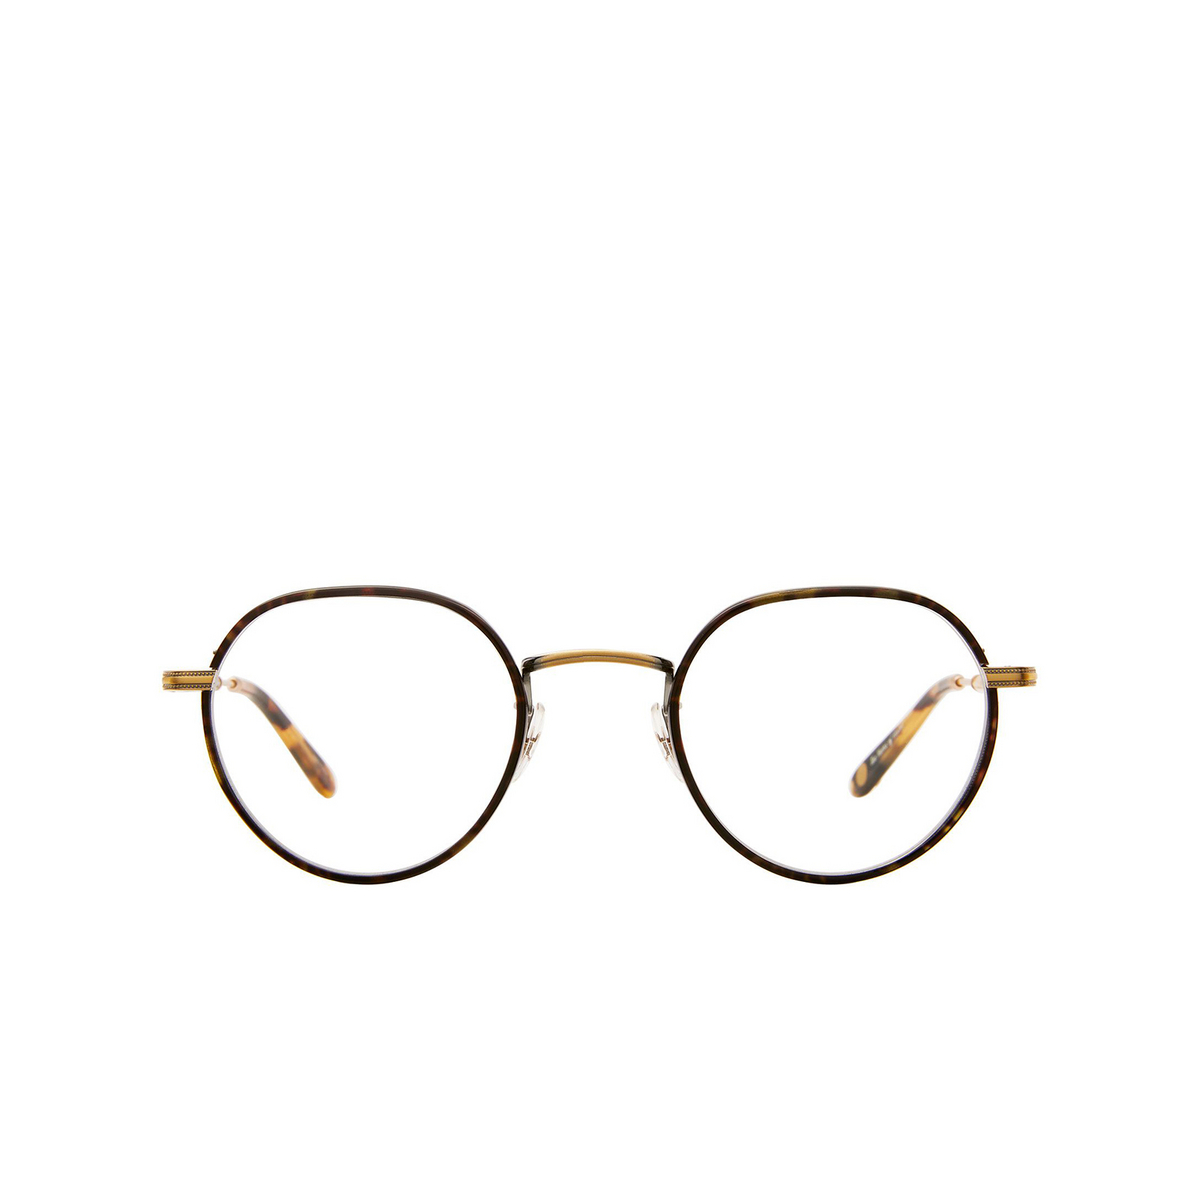 Garrett Leight ROBSON W Eyeglasses BBT-ATG-MDKT Bourbon Tortoise-Antique Gold-Matte Dark Tortoise - front view